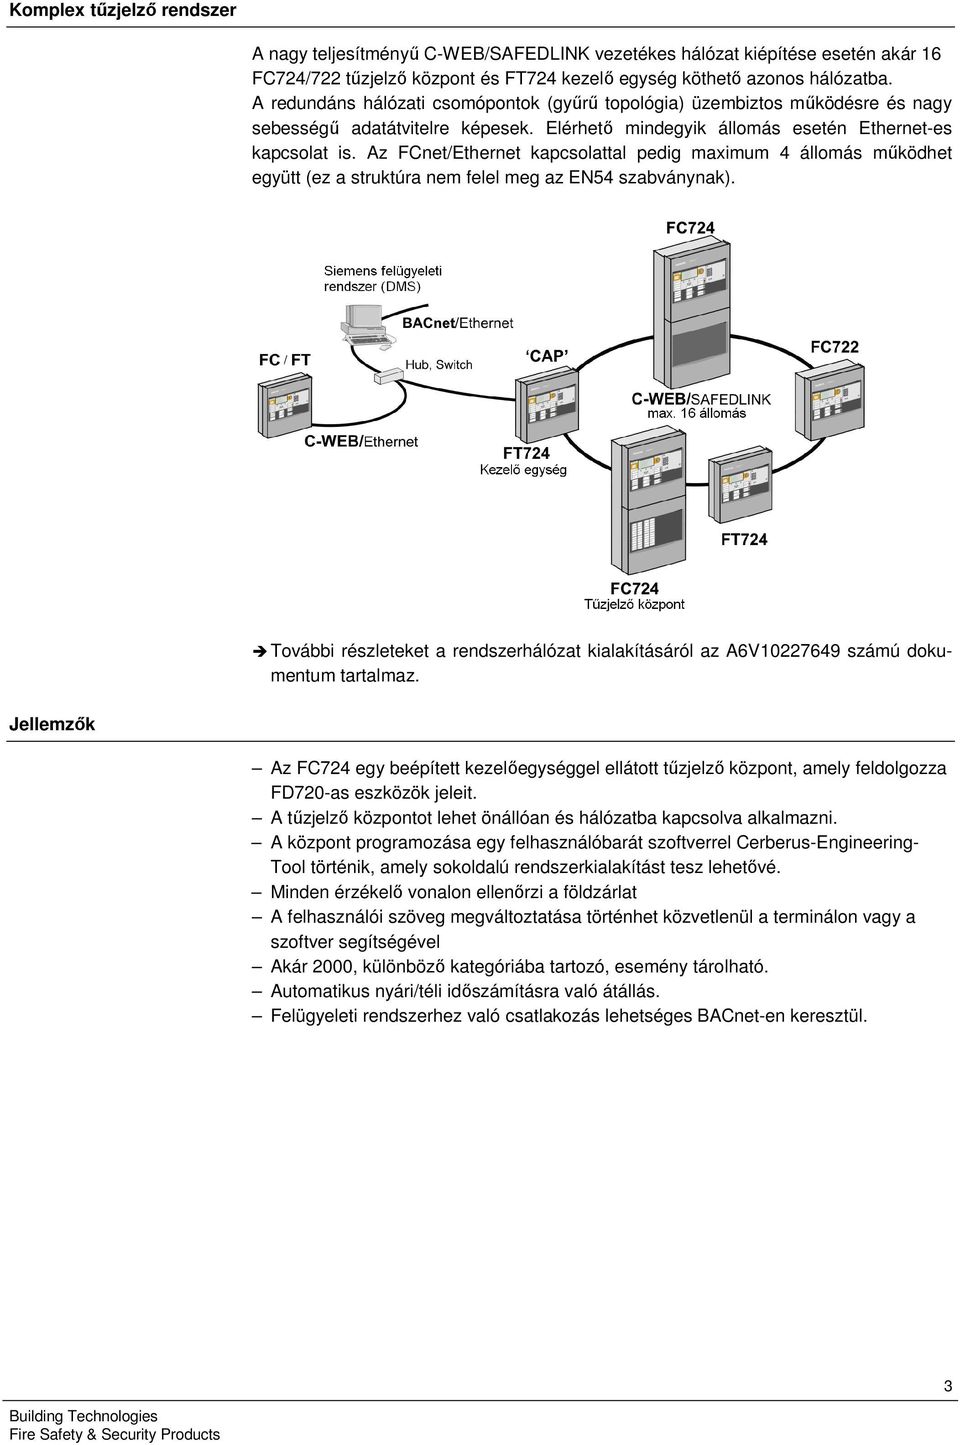 Az FCnet/Ethernet kapcsolattal pedig maximum 4 állomás működhet együtt (ez a struktúra nem felel meg az EN54 szabványnak).